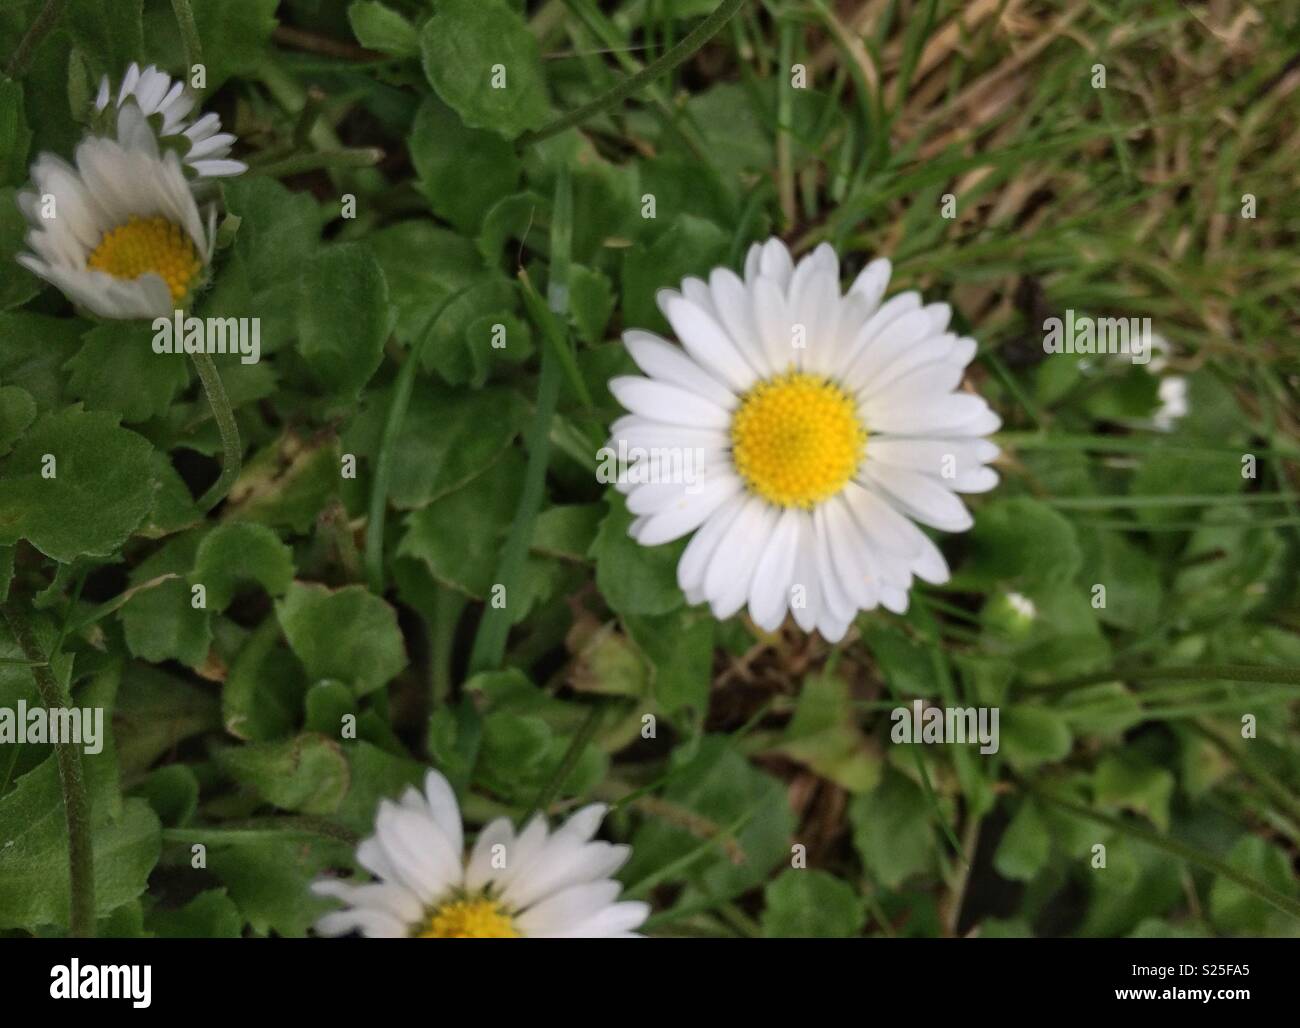 Single white daisy Stock Photo